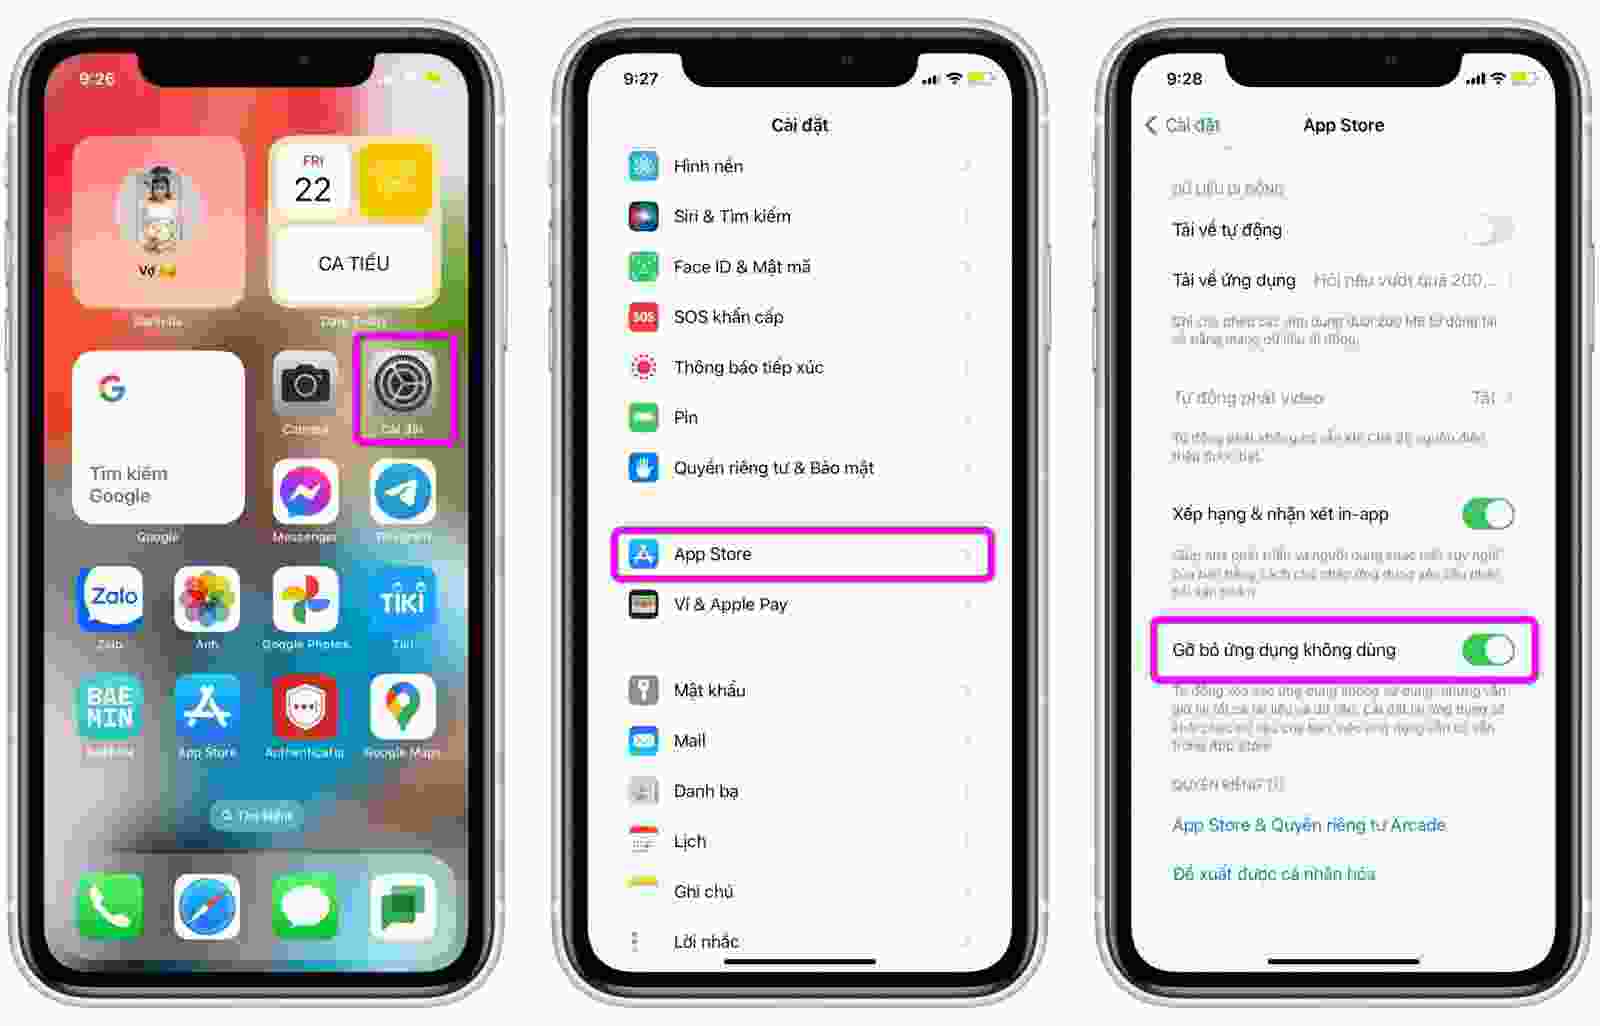 Có quá nhiều ứng dụng không sử dụng trên iPhone và chúng cần được xóa để giải phóng bộ nhớ. Trên iOS 16, việc xóa ứng dụng sẽ trở nên đơn giản hơn với hướng dẫn chi tiết. Bạn có thể xóa toàn bộ các ứng dụng không sử dụng và giúp tăng bộ nhớ một cách nhanh chóng. Hãy cập nhật iOS 16 để trải nghiệm tính năng mới này.